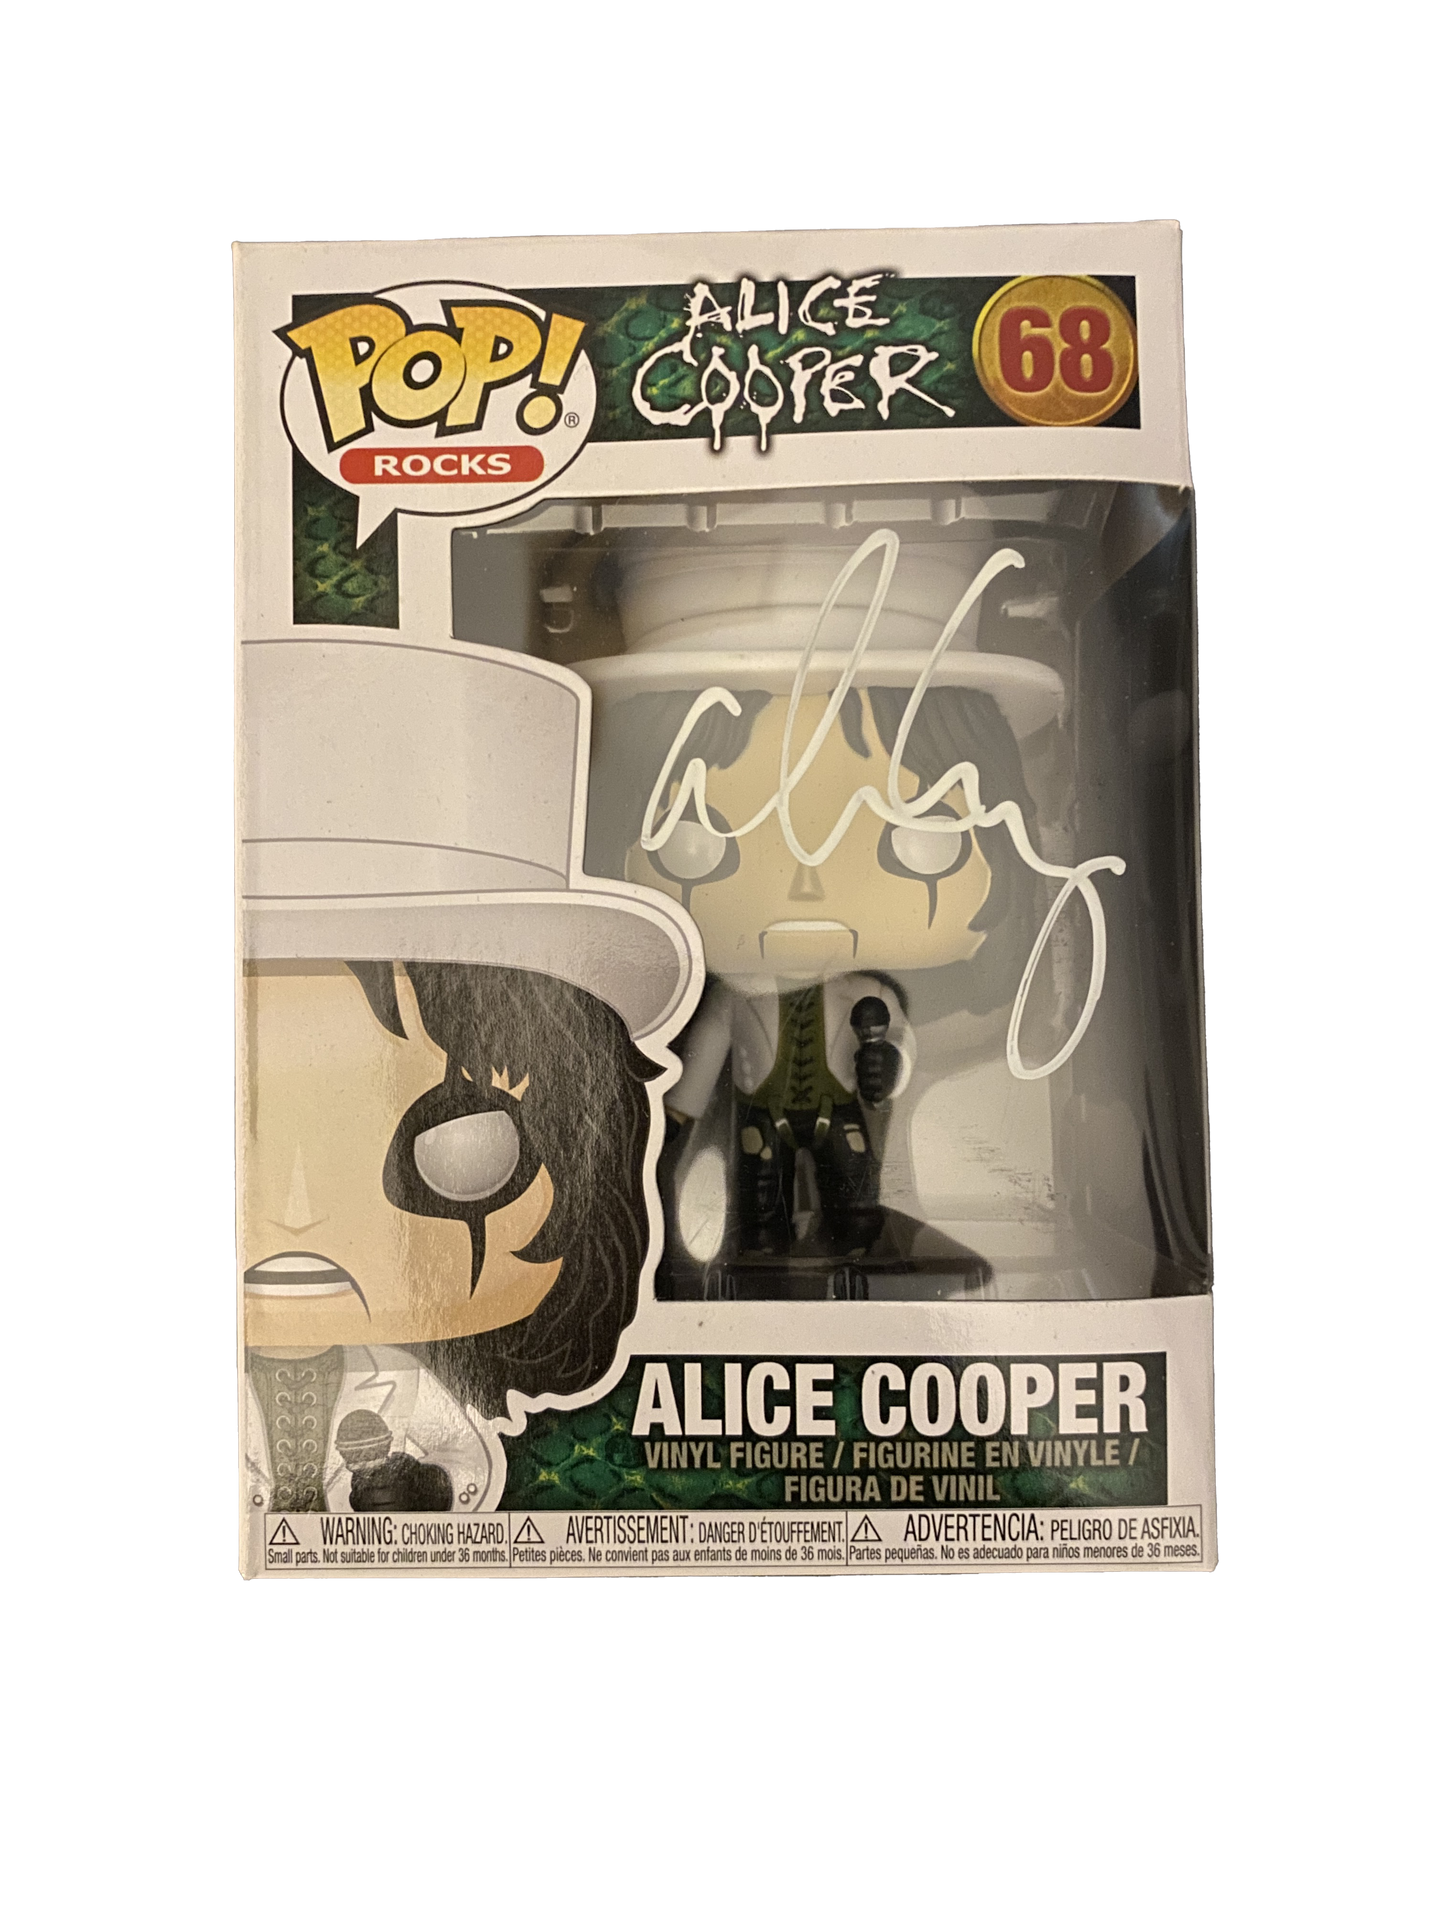 Alice Cooper Signed  Funko Pop W/ Beckett COA